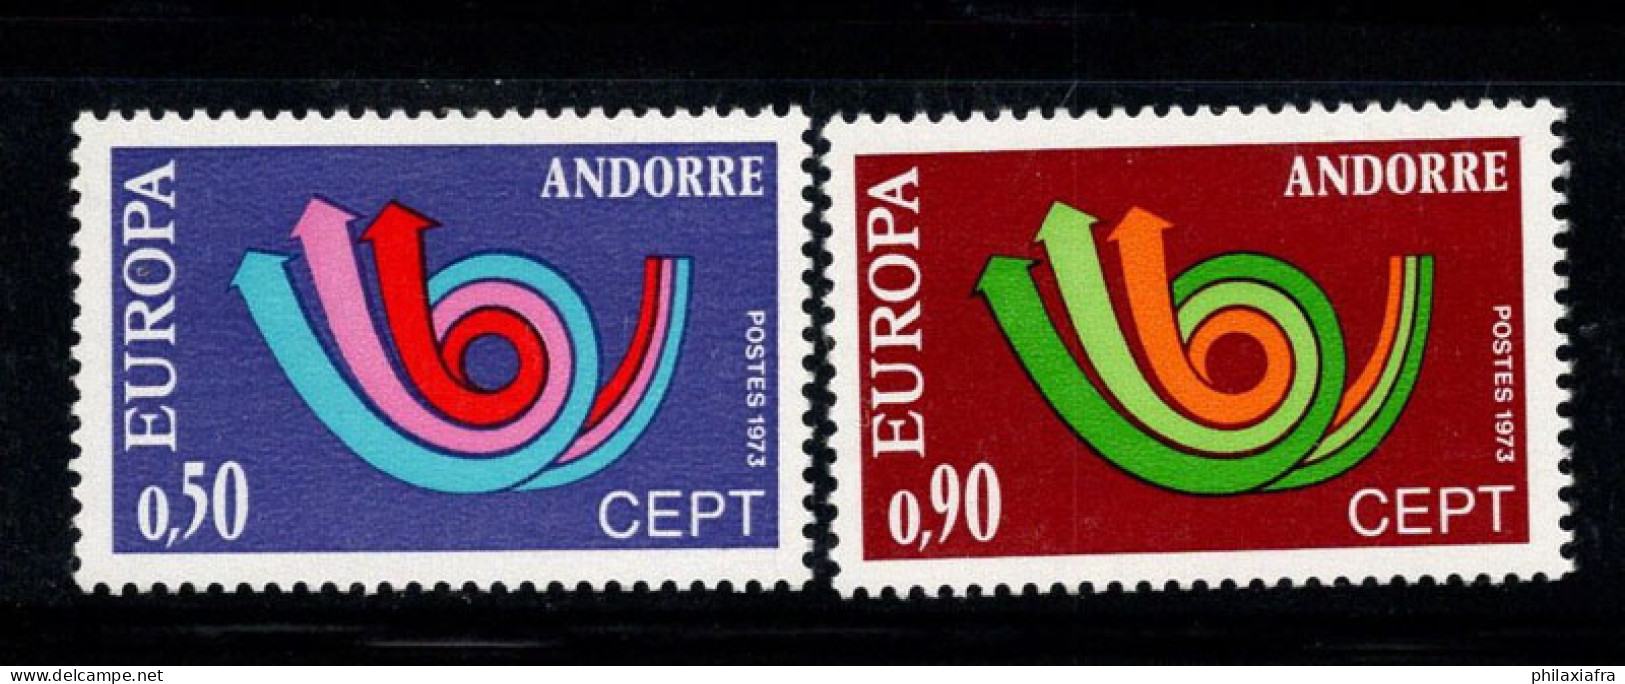 Europe 1973 Neuf ** 100% CEPT, Andorre Français - 1973